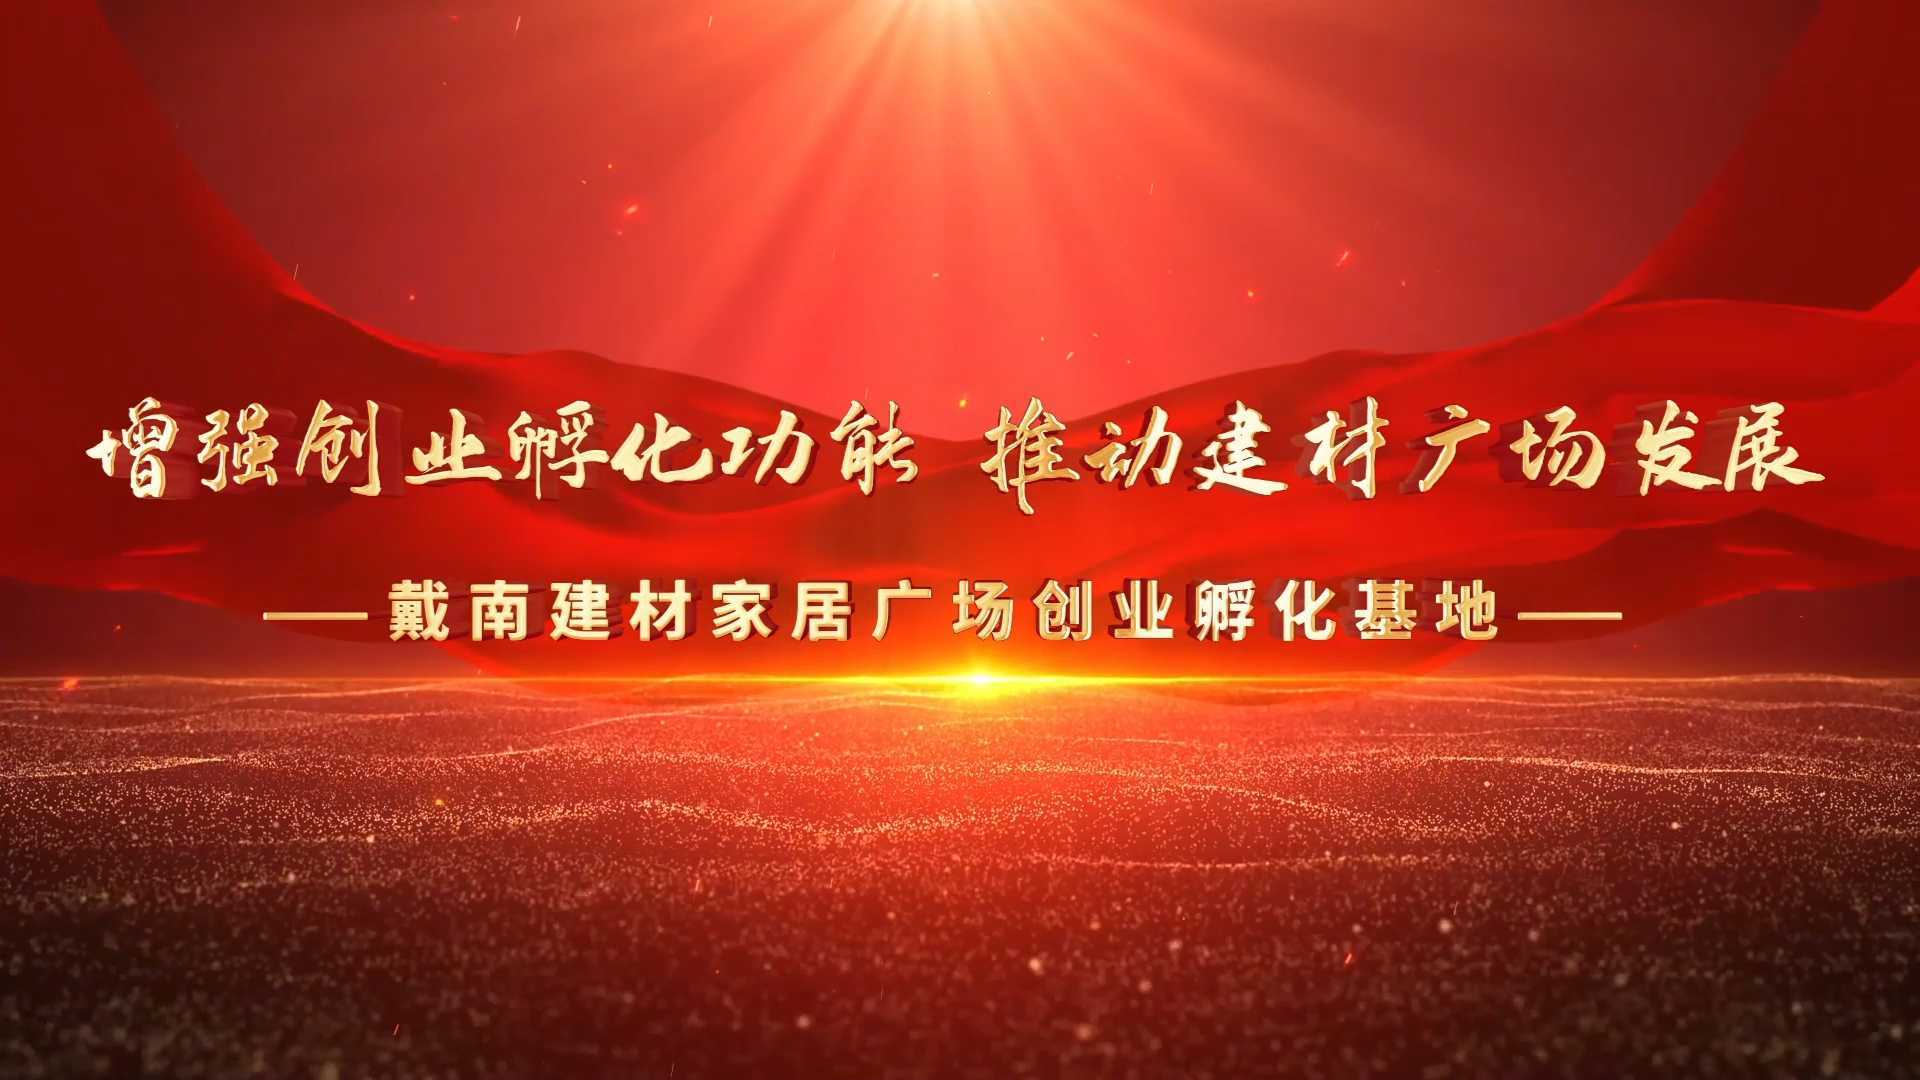 戴南建材家居广场创业孵化基地 宣传片